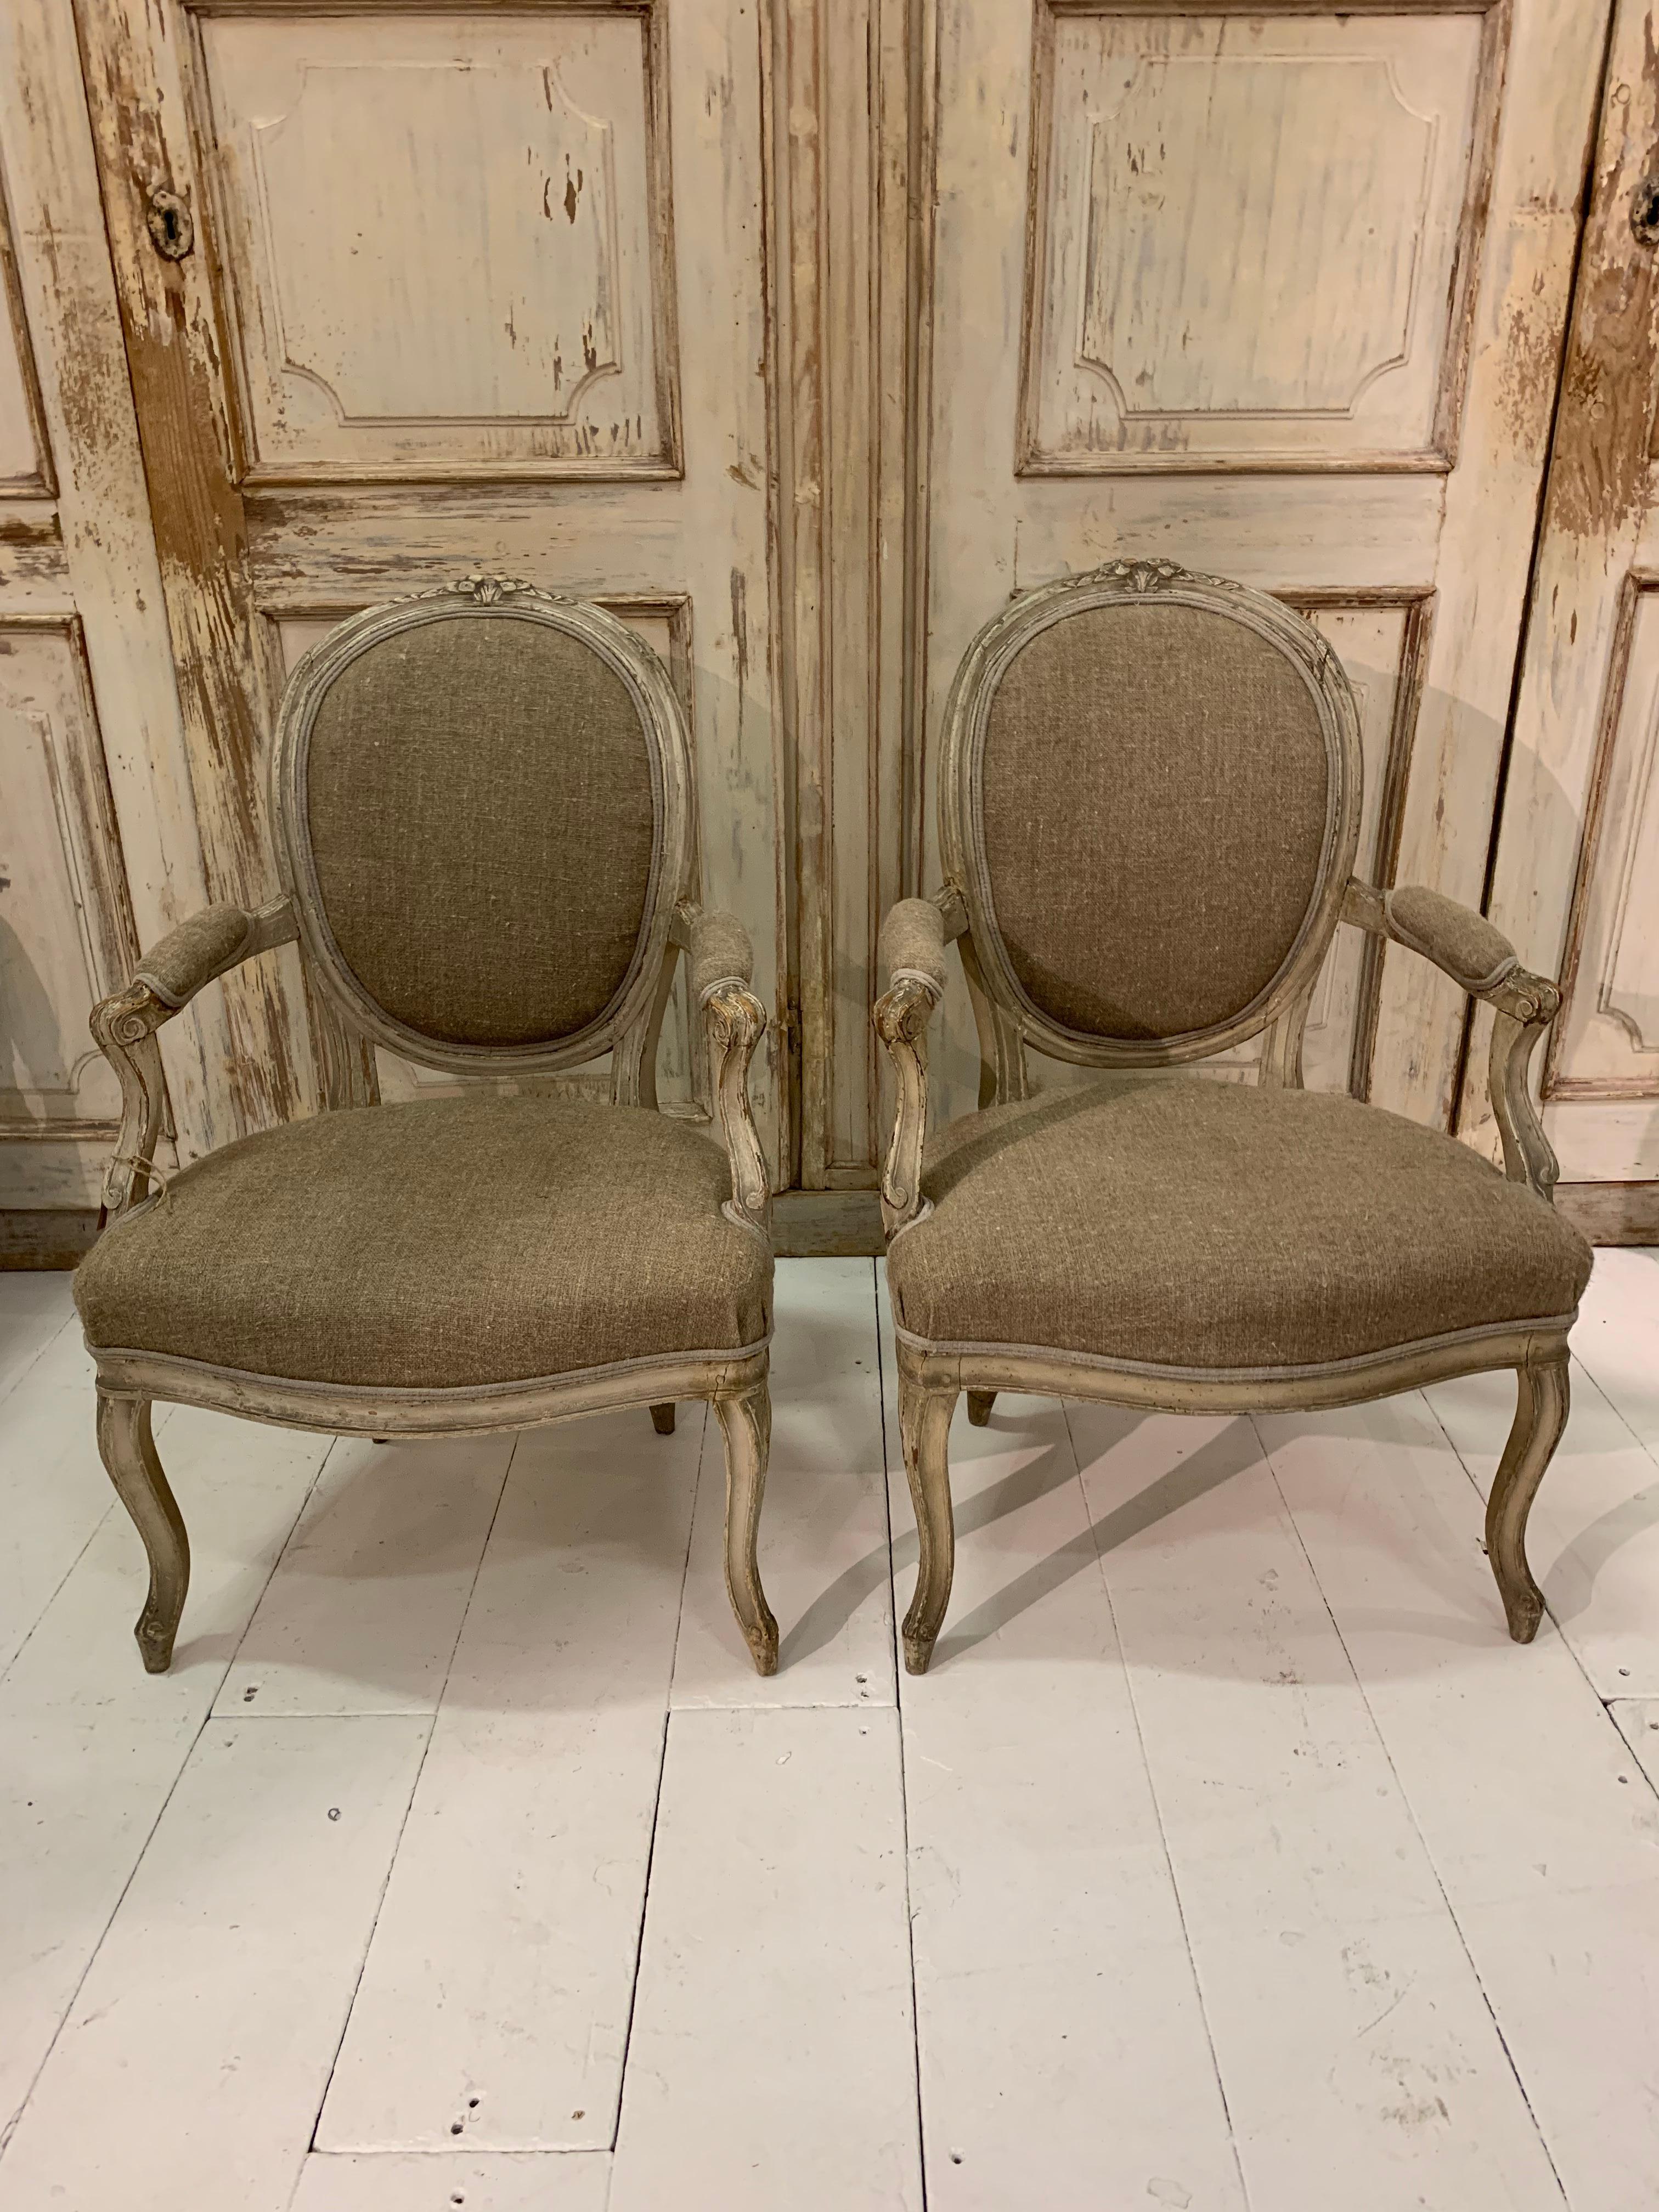 Ein schönes Paar offener französischer Sessel aus dem späten 19. Jahrhundert mit geschnitzten Details und Originallackierung.
Die Sessel sind mit ungarischem Leinen gepolstert und eignen sich sowohl als bequeme Beistellstühle als auch als perfekte